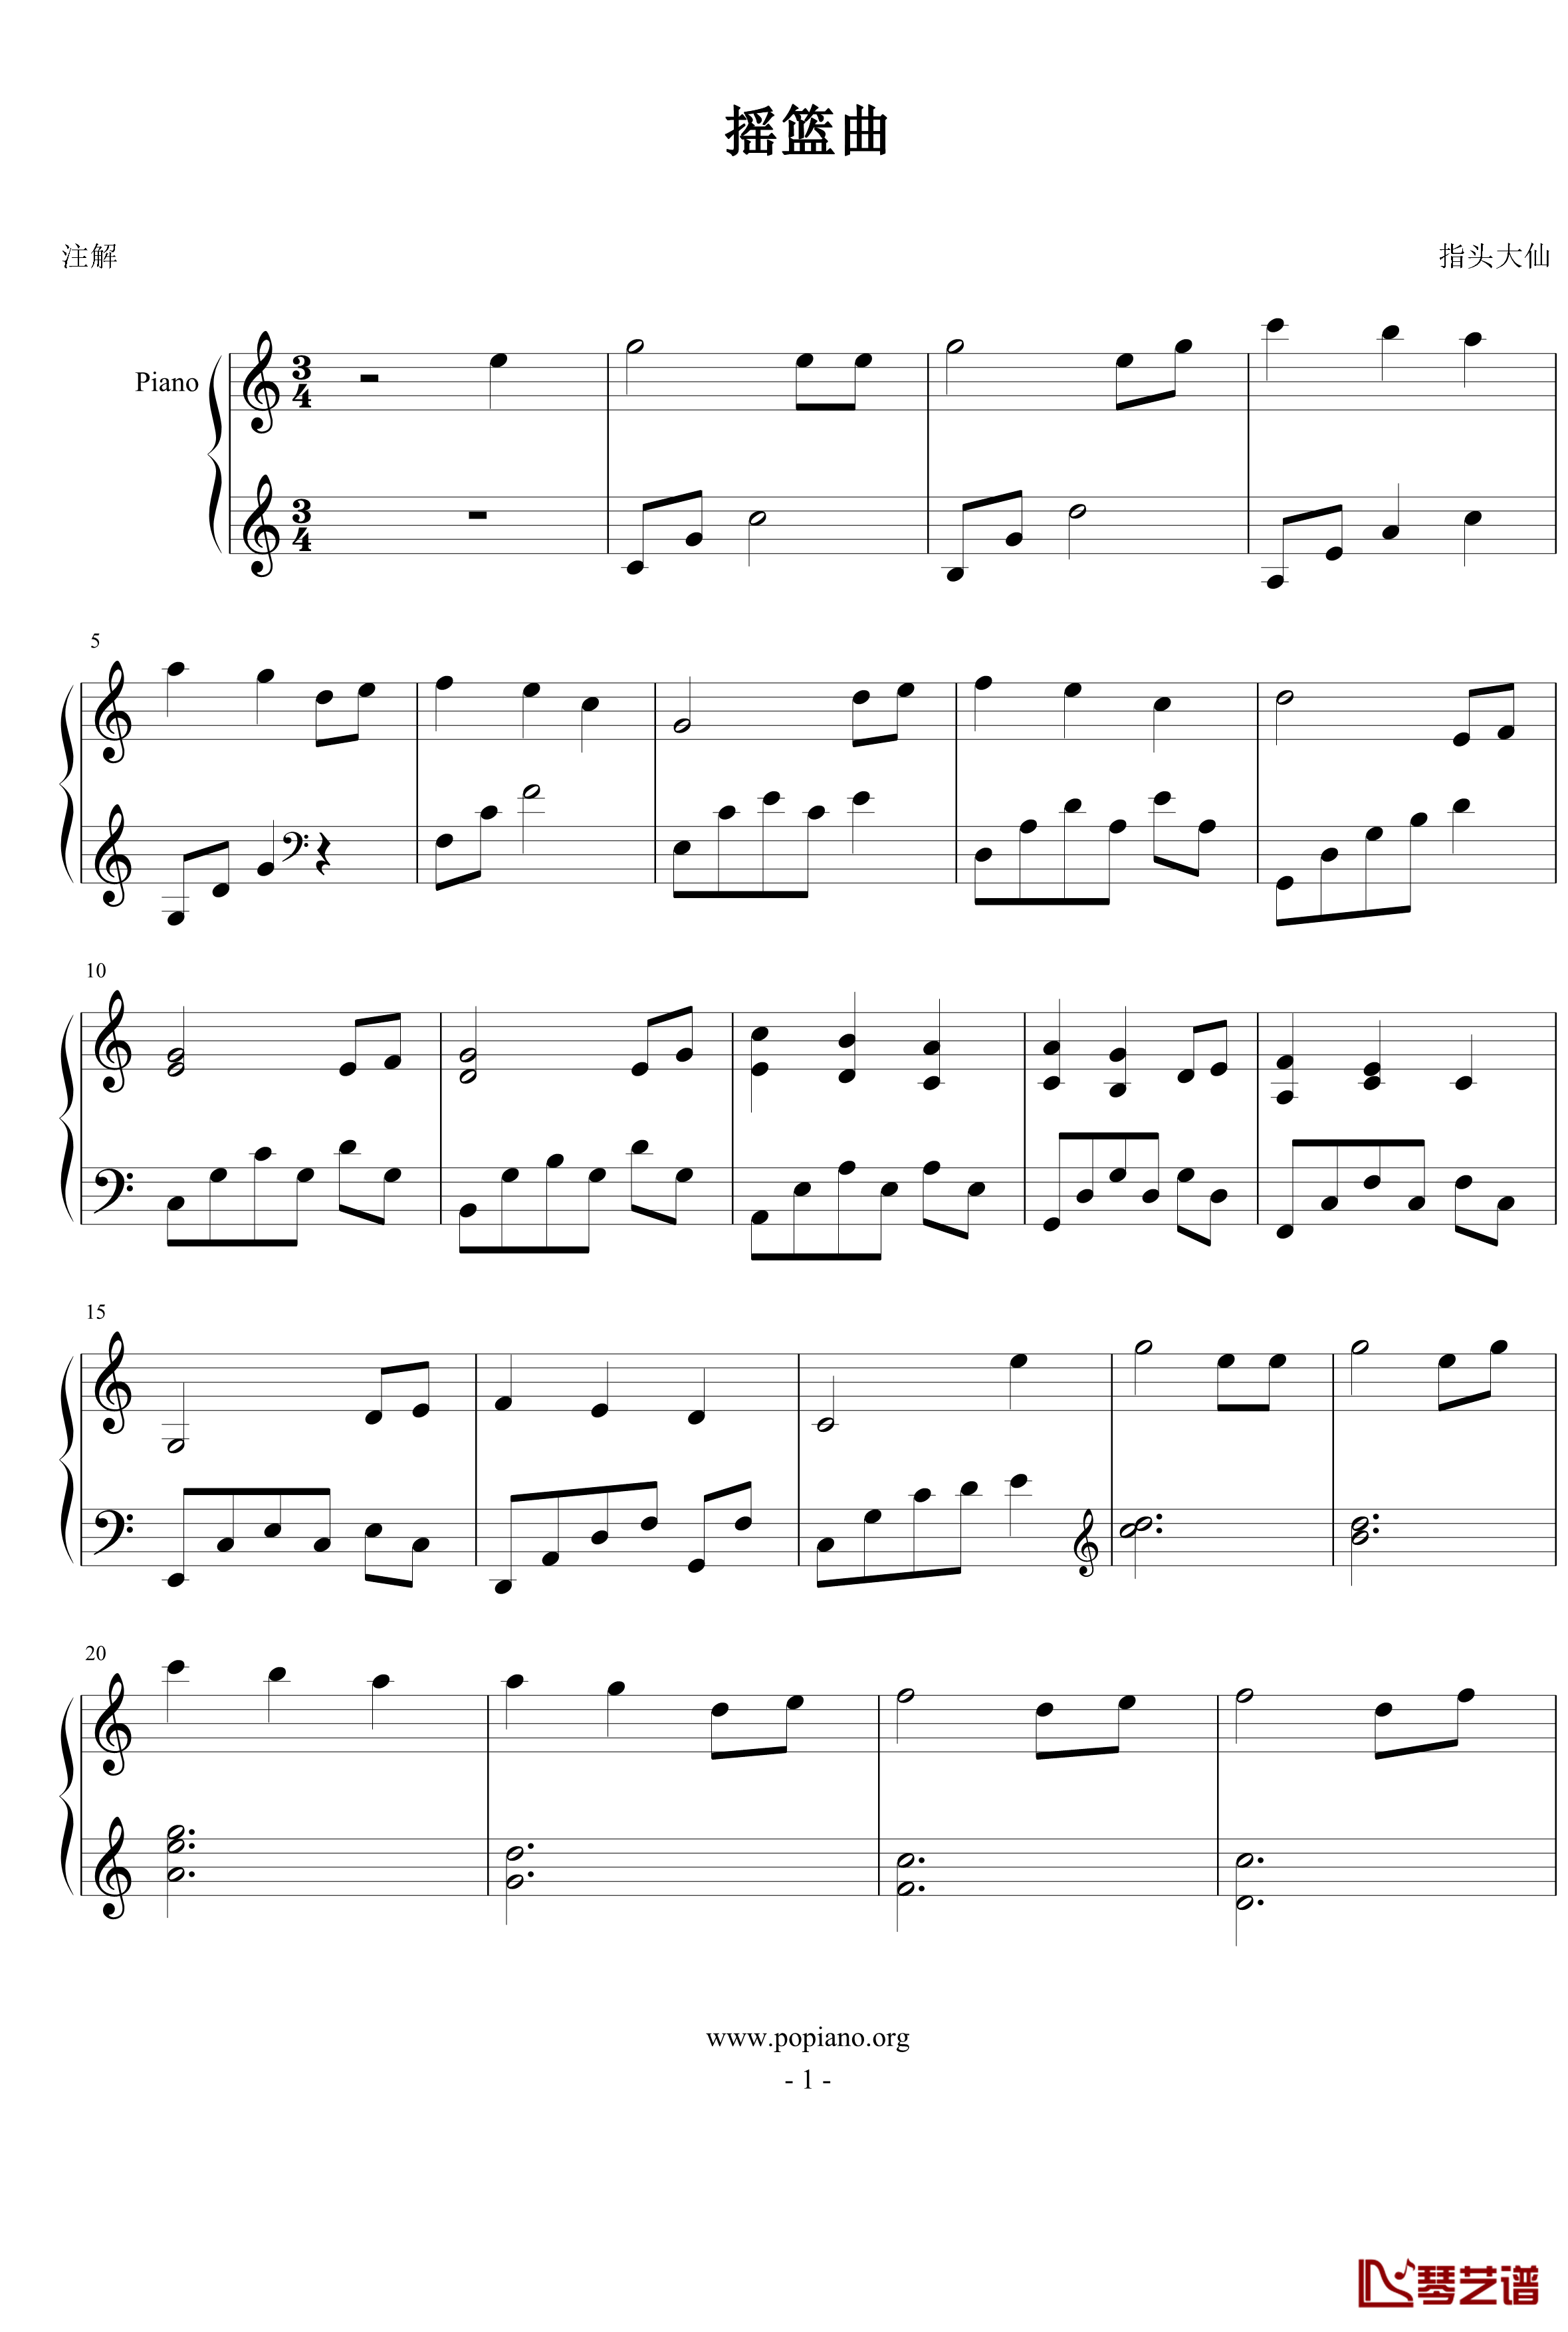 摇篮曲钢琴谱-世界名曲-改编简单版1